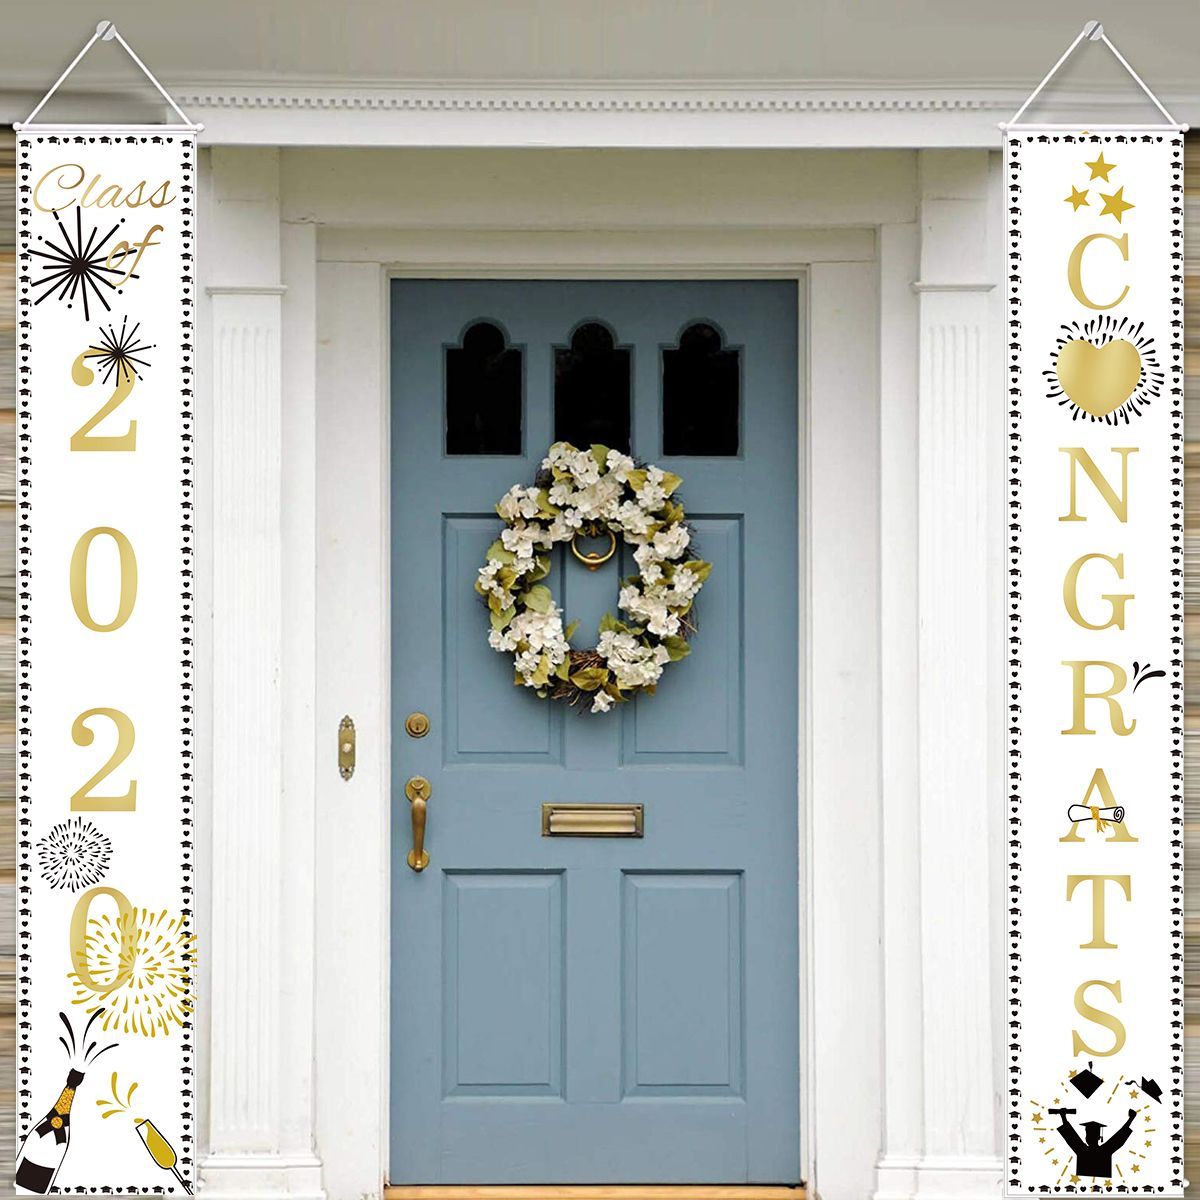 2020-Graduation-Porch-Sign-Graduats-Hanging-Banner-Cloth-Plaques-Signs-30x180CM-Decorations-1648096